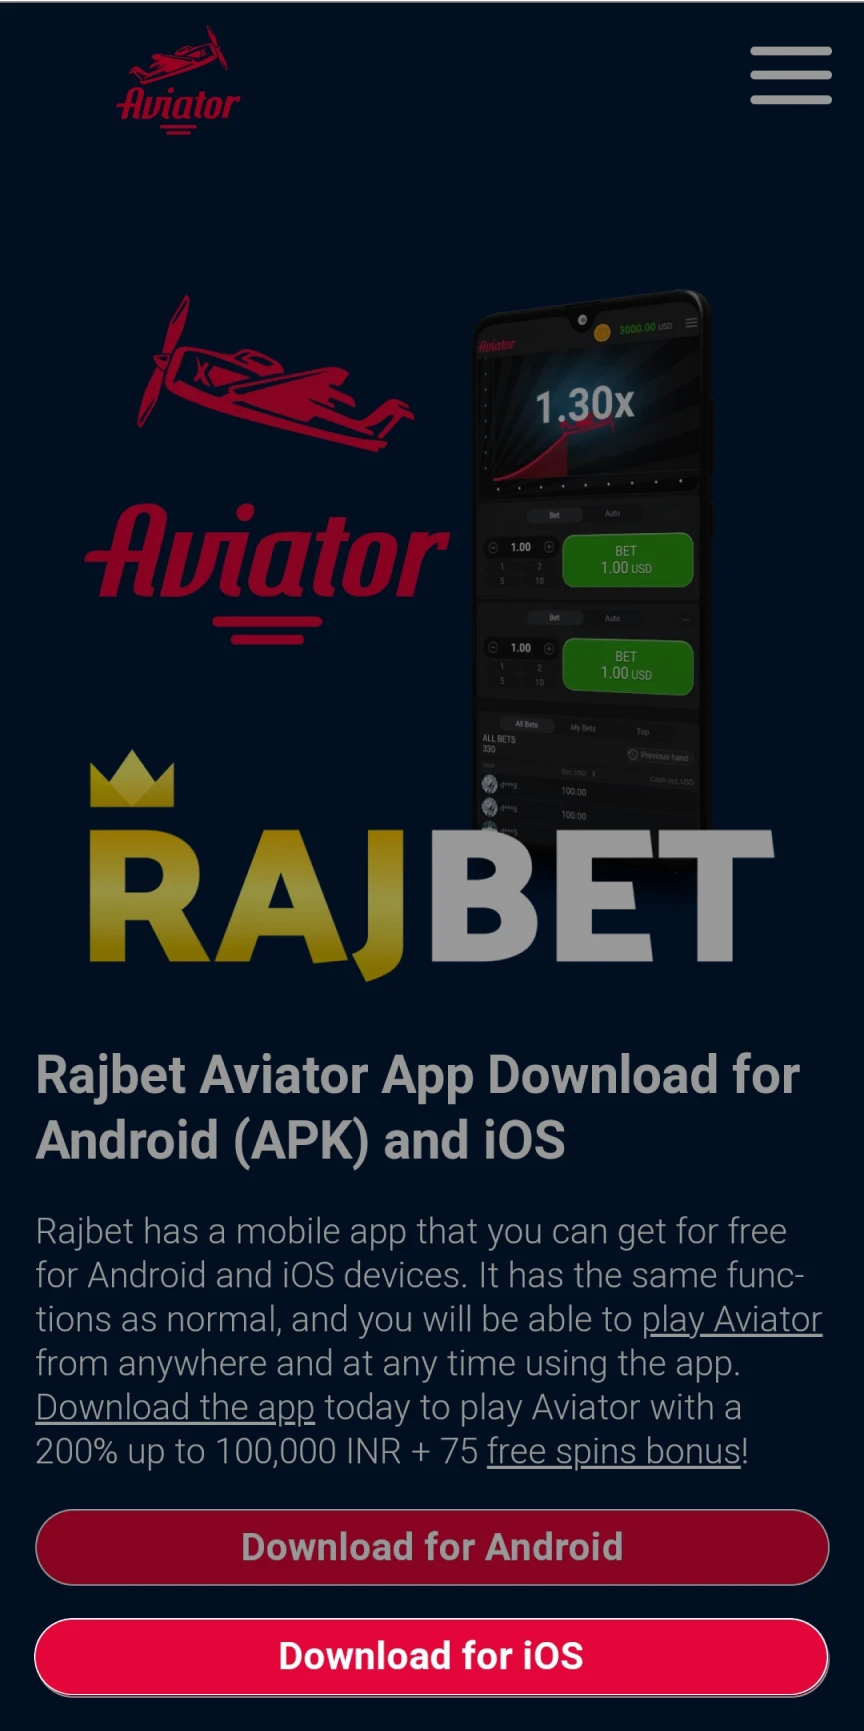 Acesse a página inicial do Rajbet para baixar o aplicativo para iOS.